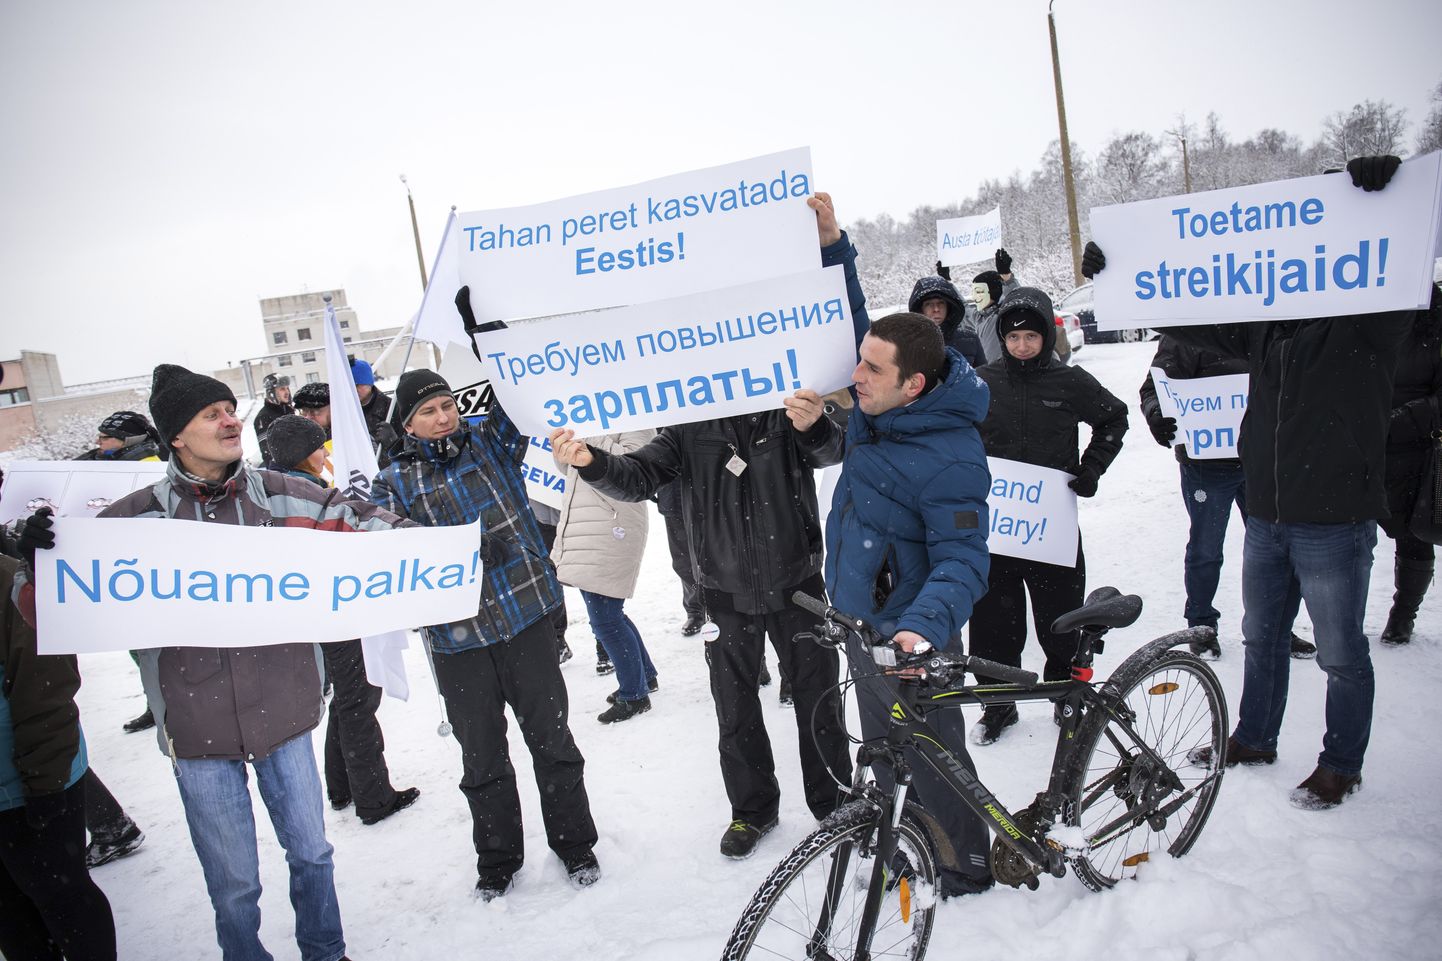 Plakatite ja lippudega olid piketil lisaks streikijatele ka nende toetajad. Kõlas nii eesti kui ka vene keel.